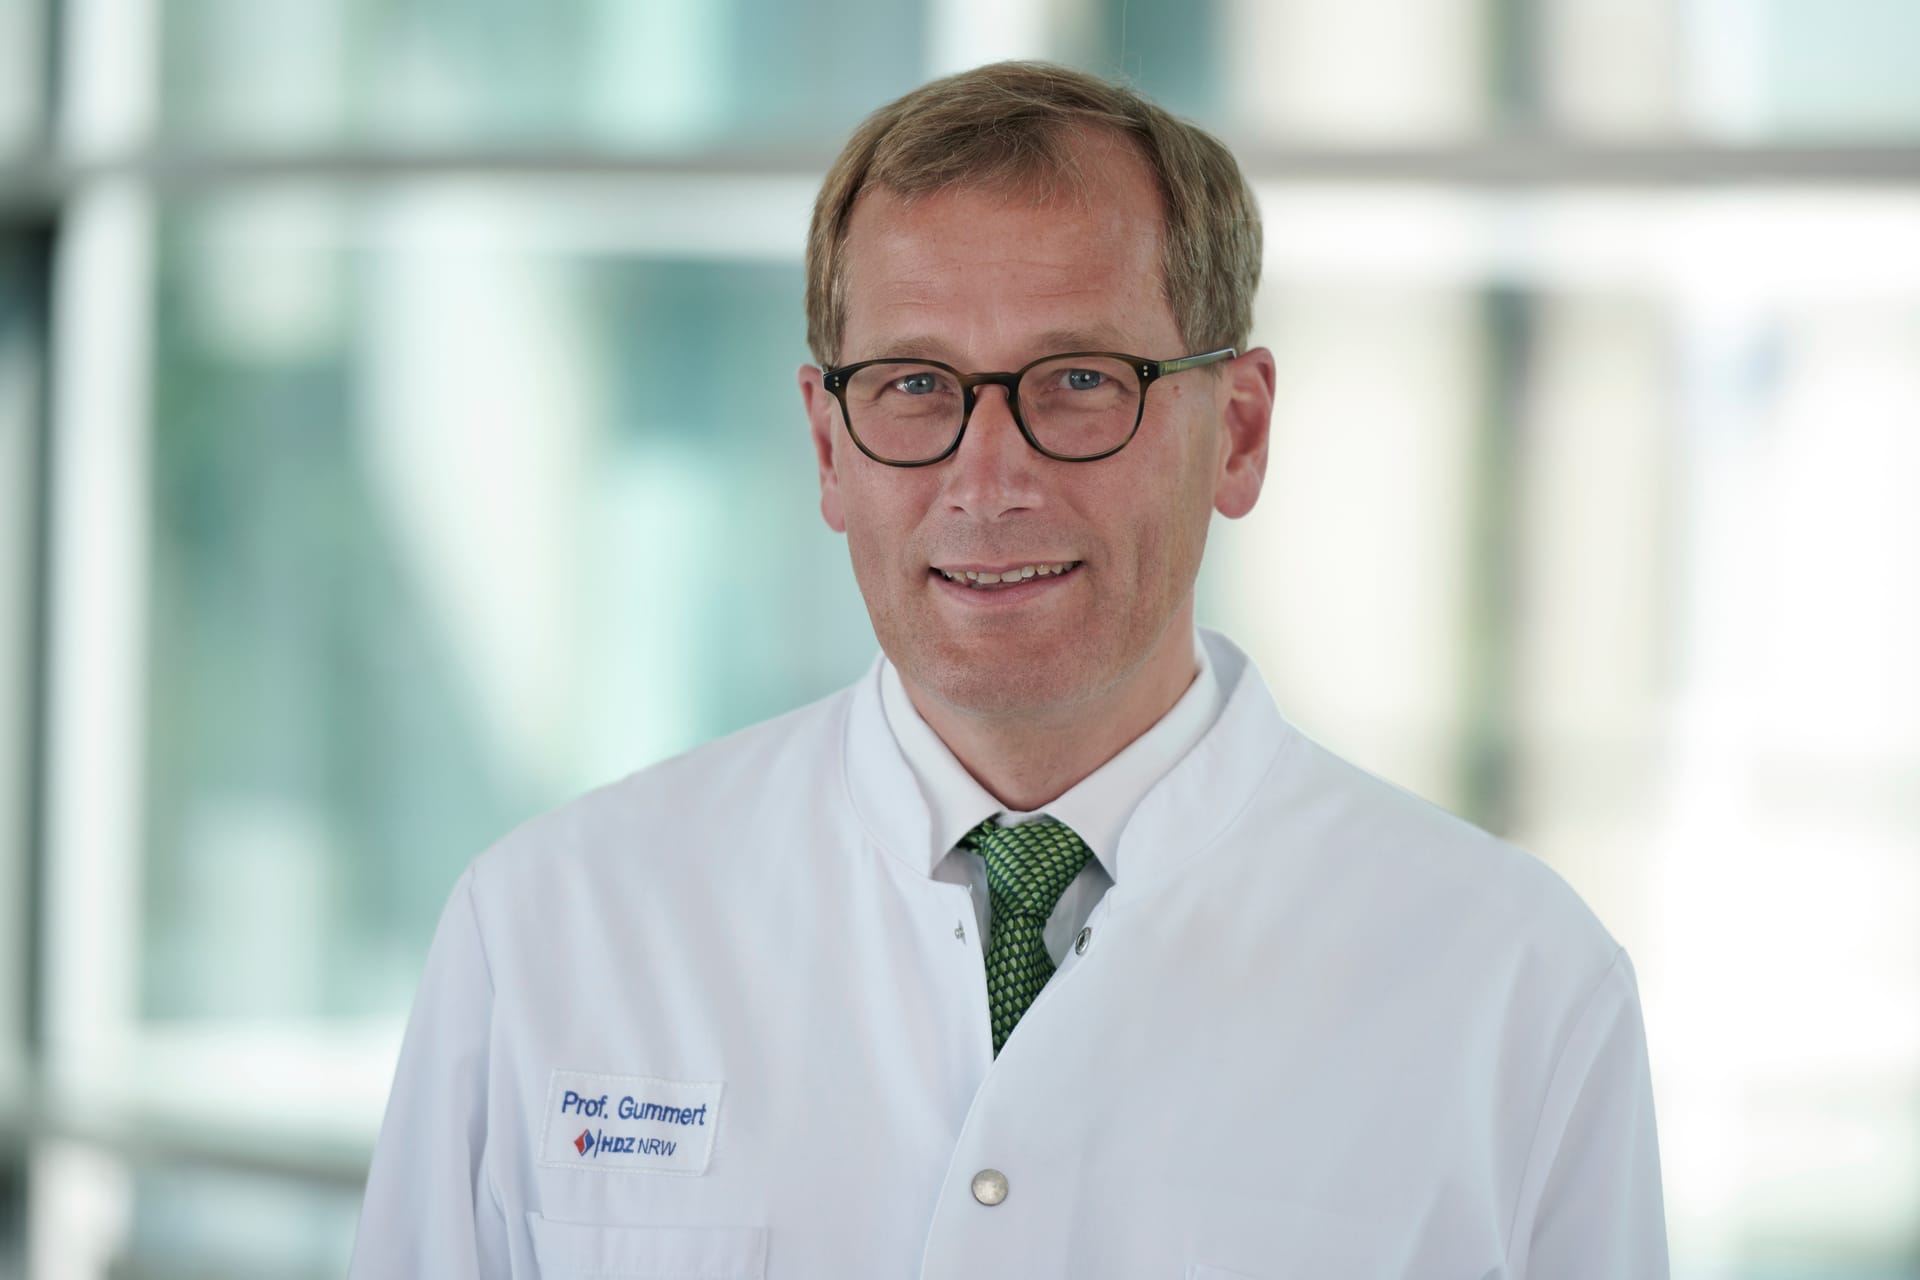 Professor Jan Gummert ist ärztlicher Direktor des Herz- und Diabeteszentrums NRW. Der Herzchirurg ist zudem Präsident der Fachgesellschaft für Herzchirurgie und Vorstandsmitglied der Deutschen Herzstiftung.